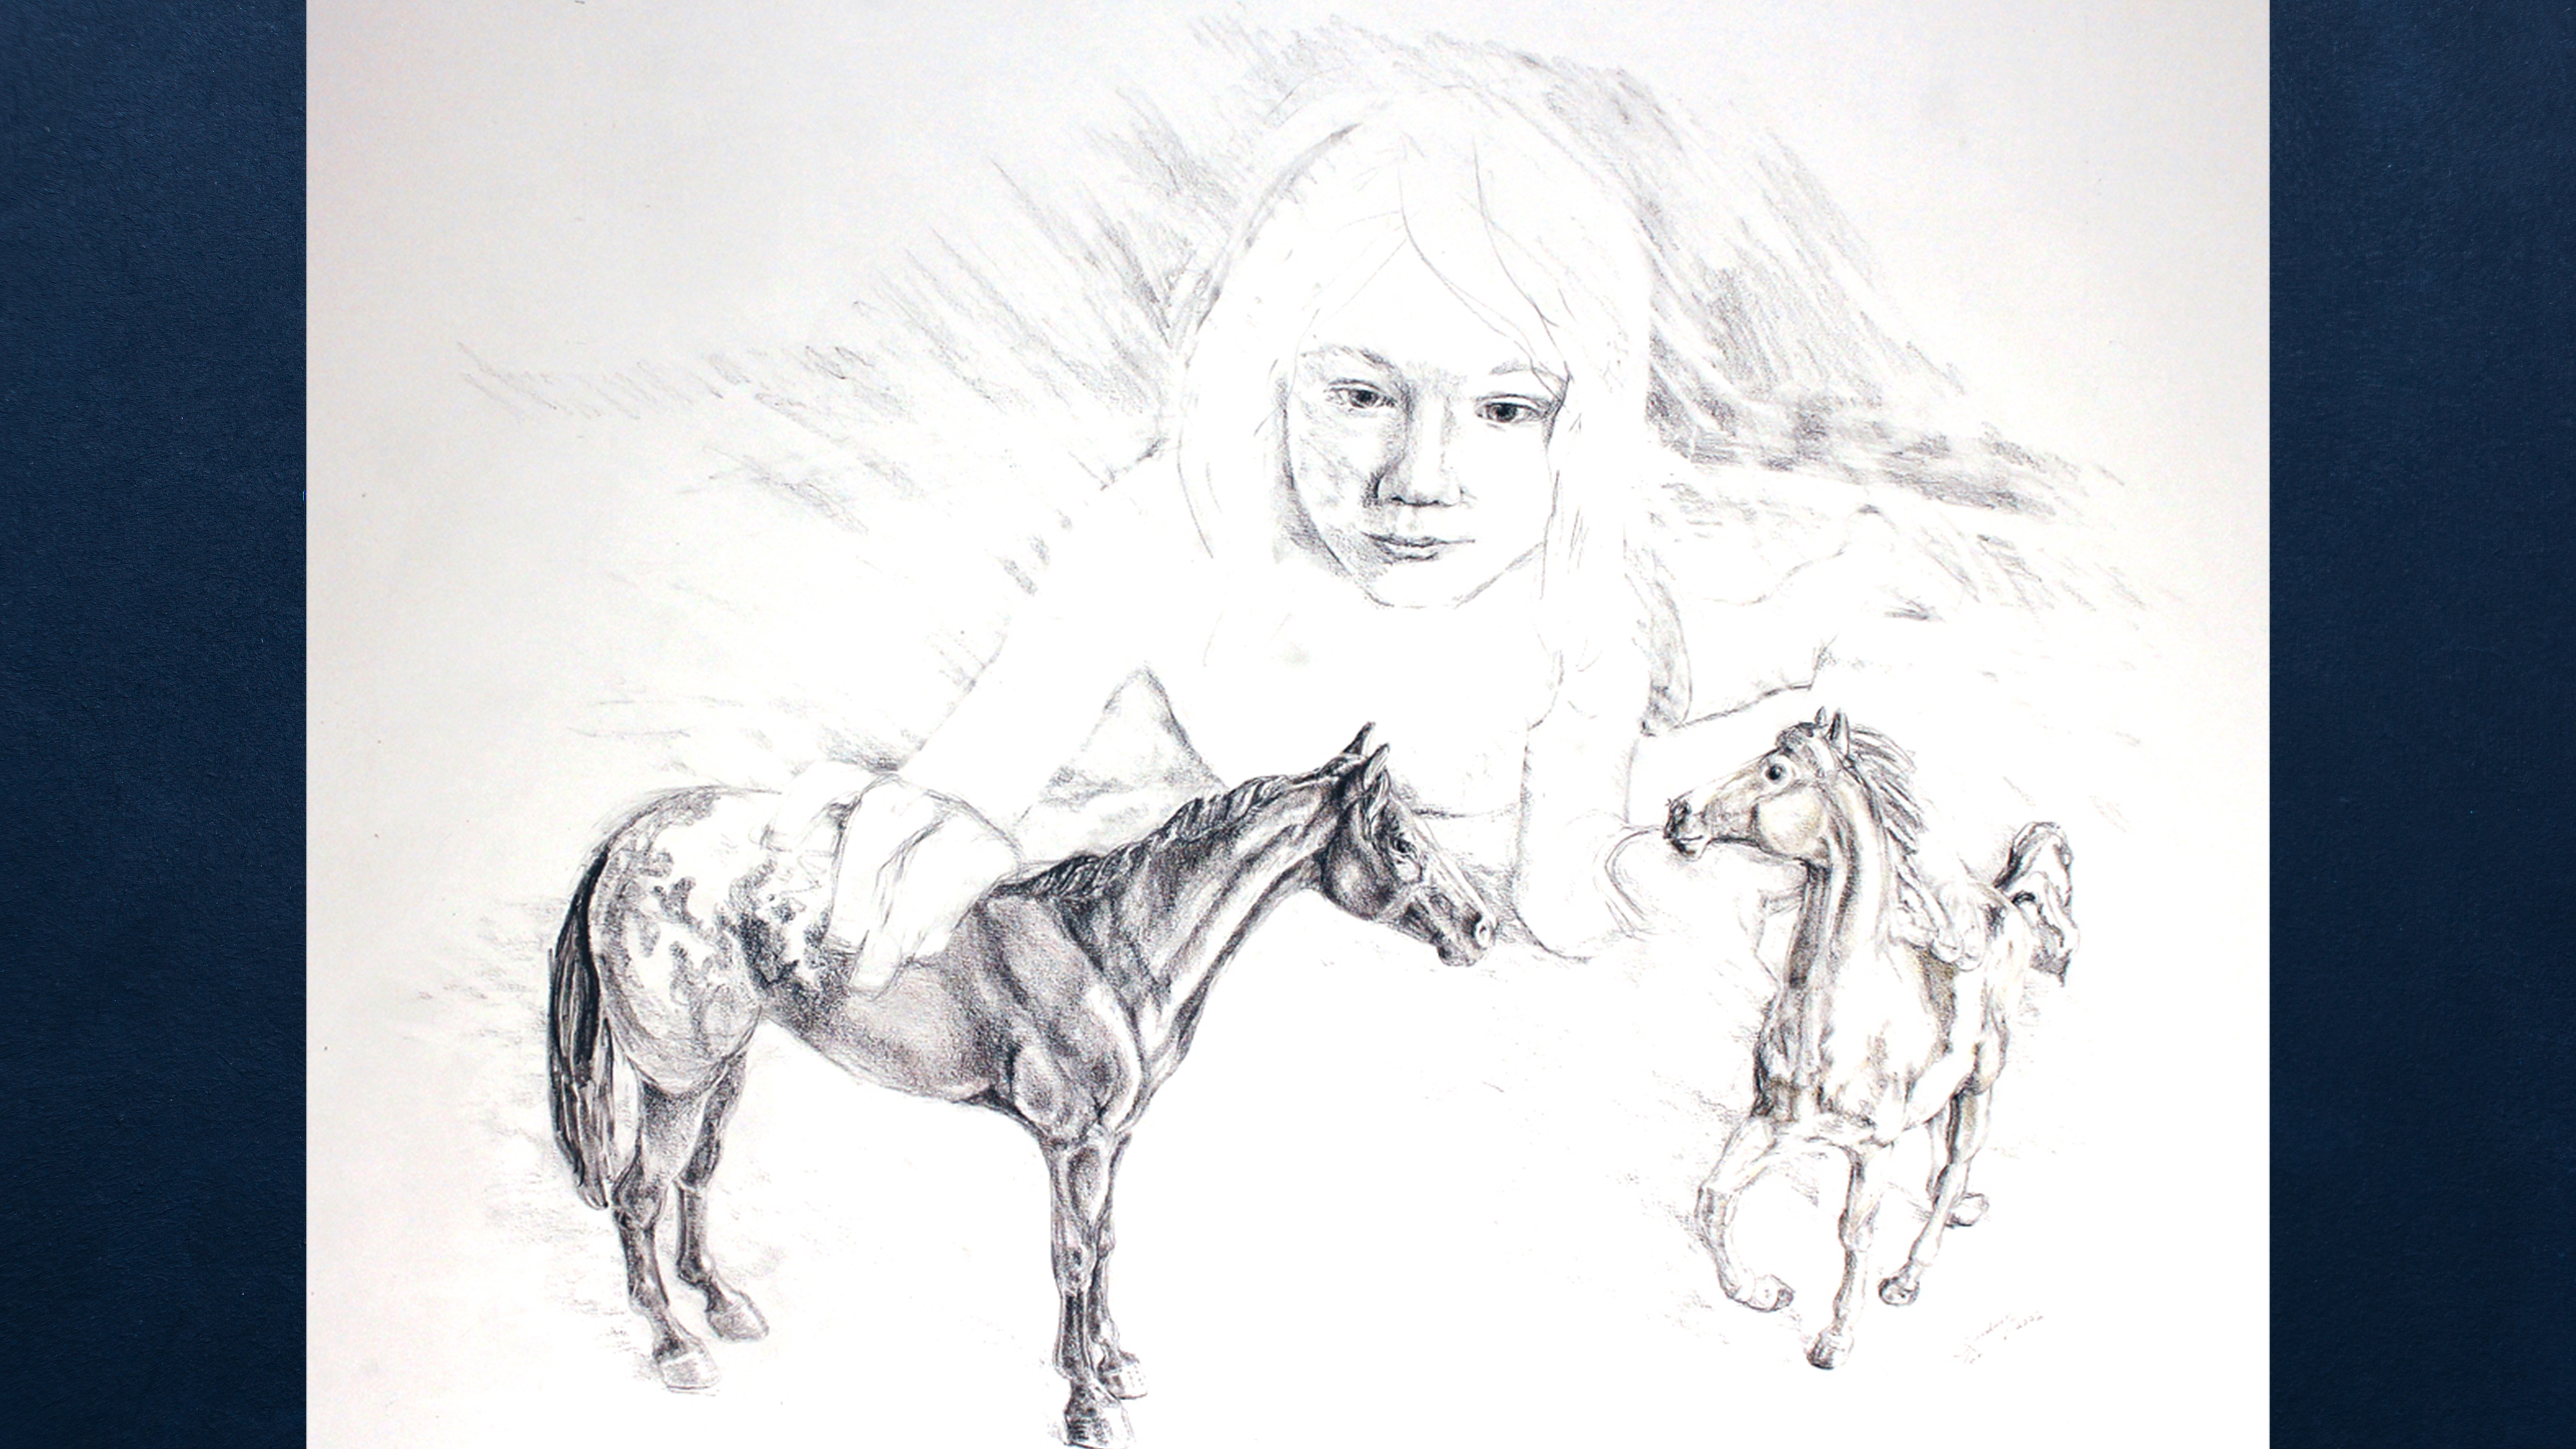 L. Twa, Little Plastic Horses, 2022, pencil and oil pencil